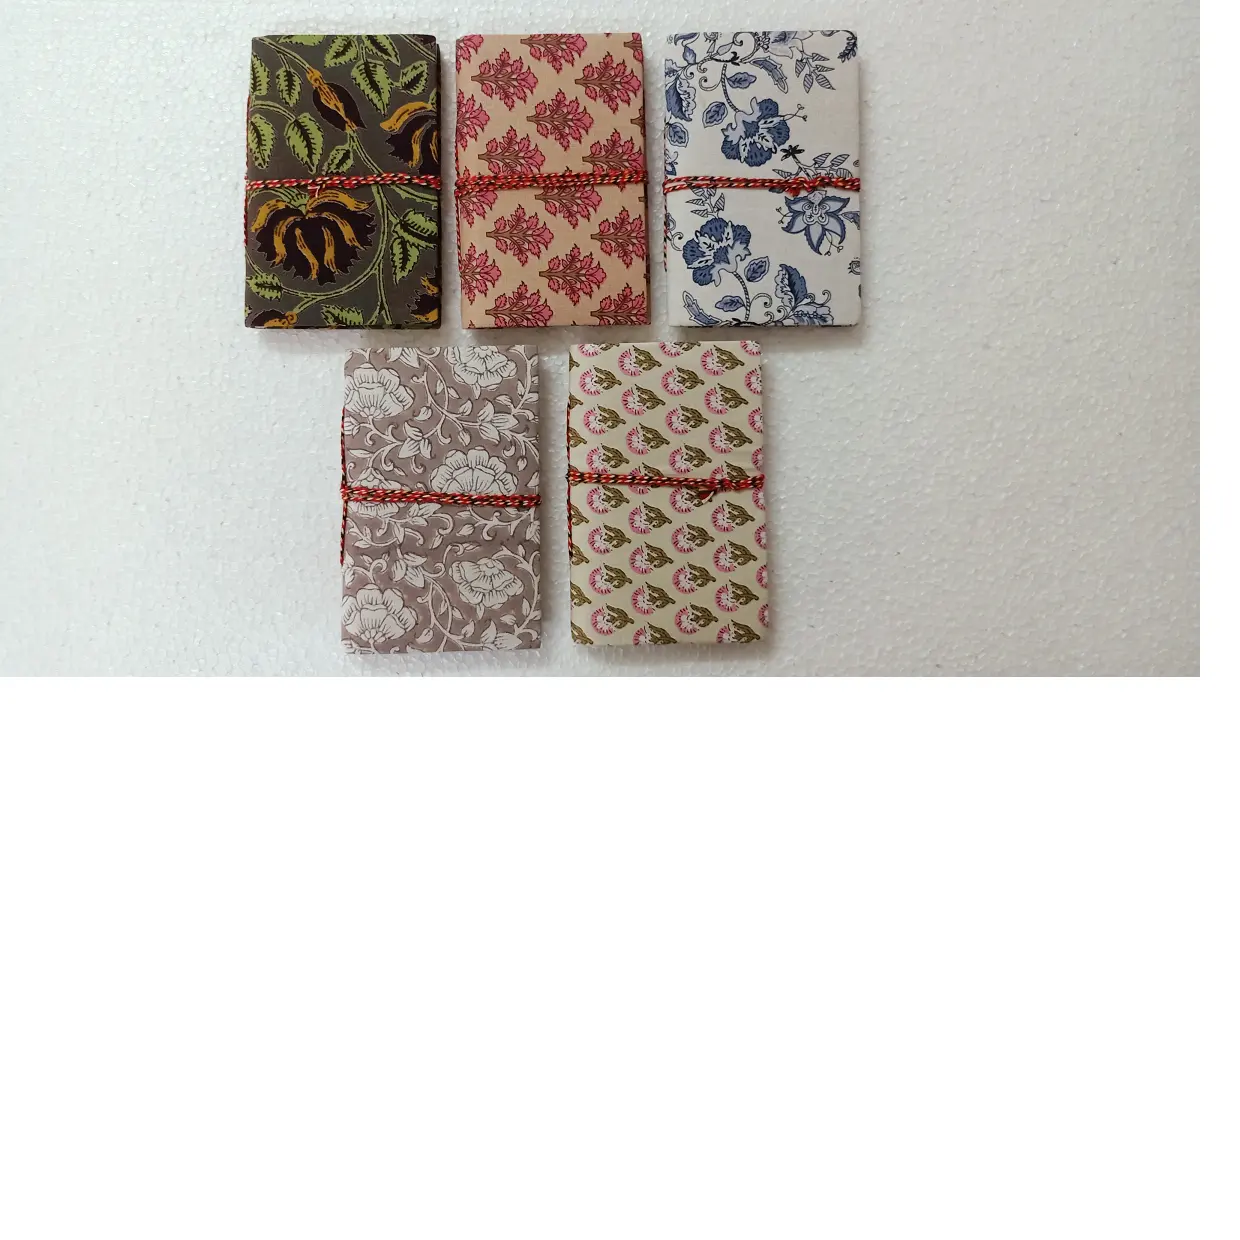 Notizbücher aus recyceltem Sari-Stoff aus recycelten Sari-Stoffen mit hand gefertigten Baumwoll papieren, ideal zum Verschenken